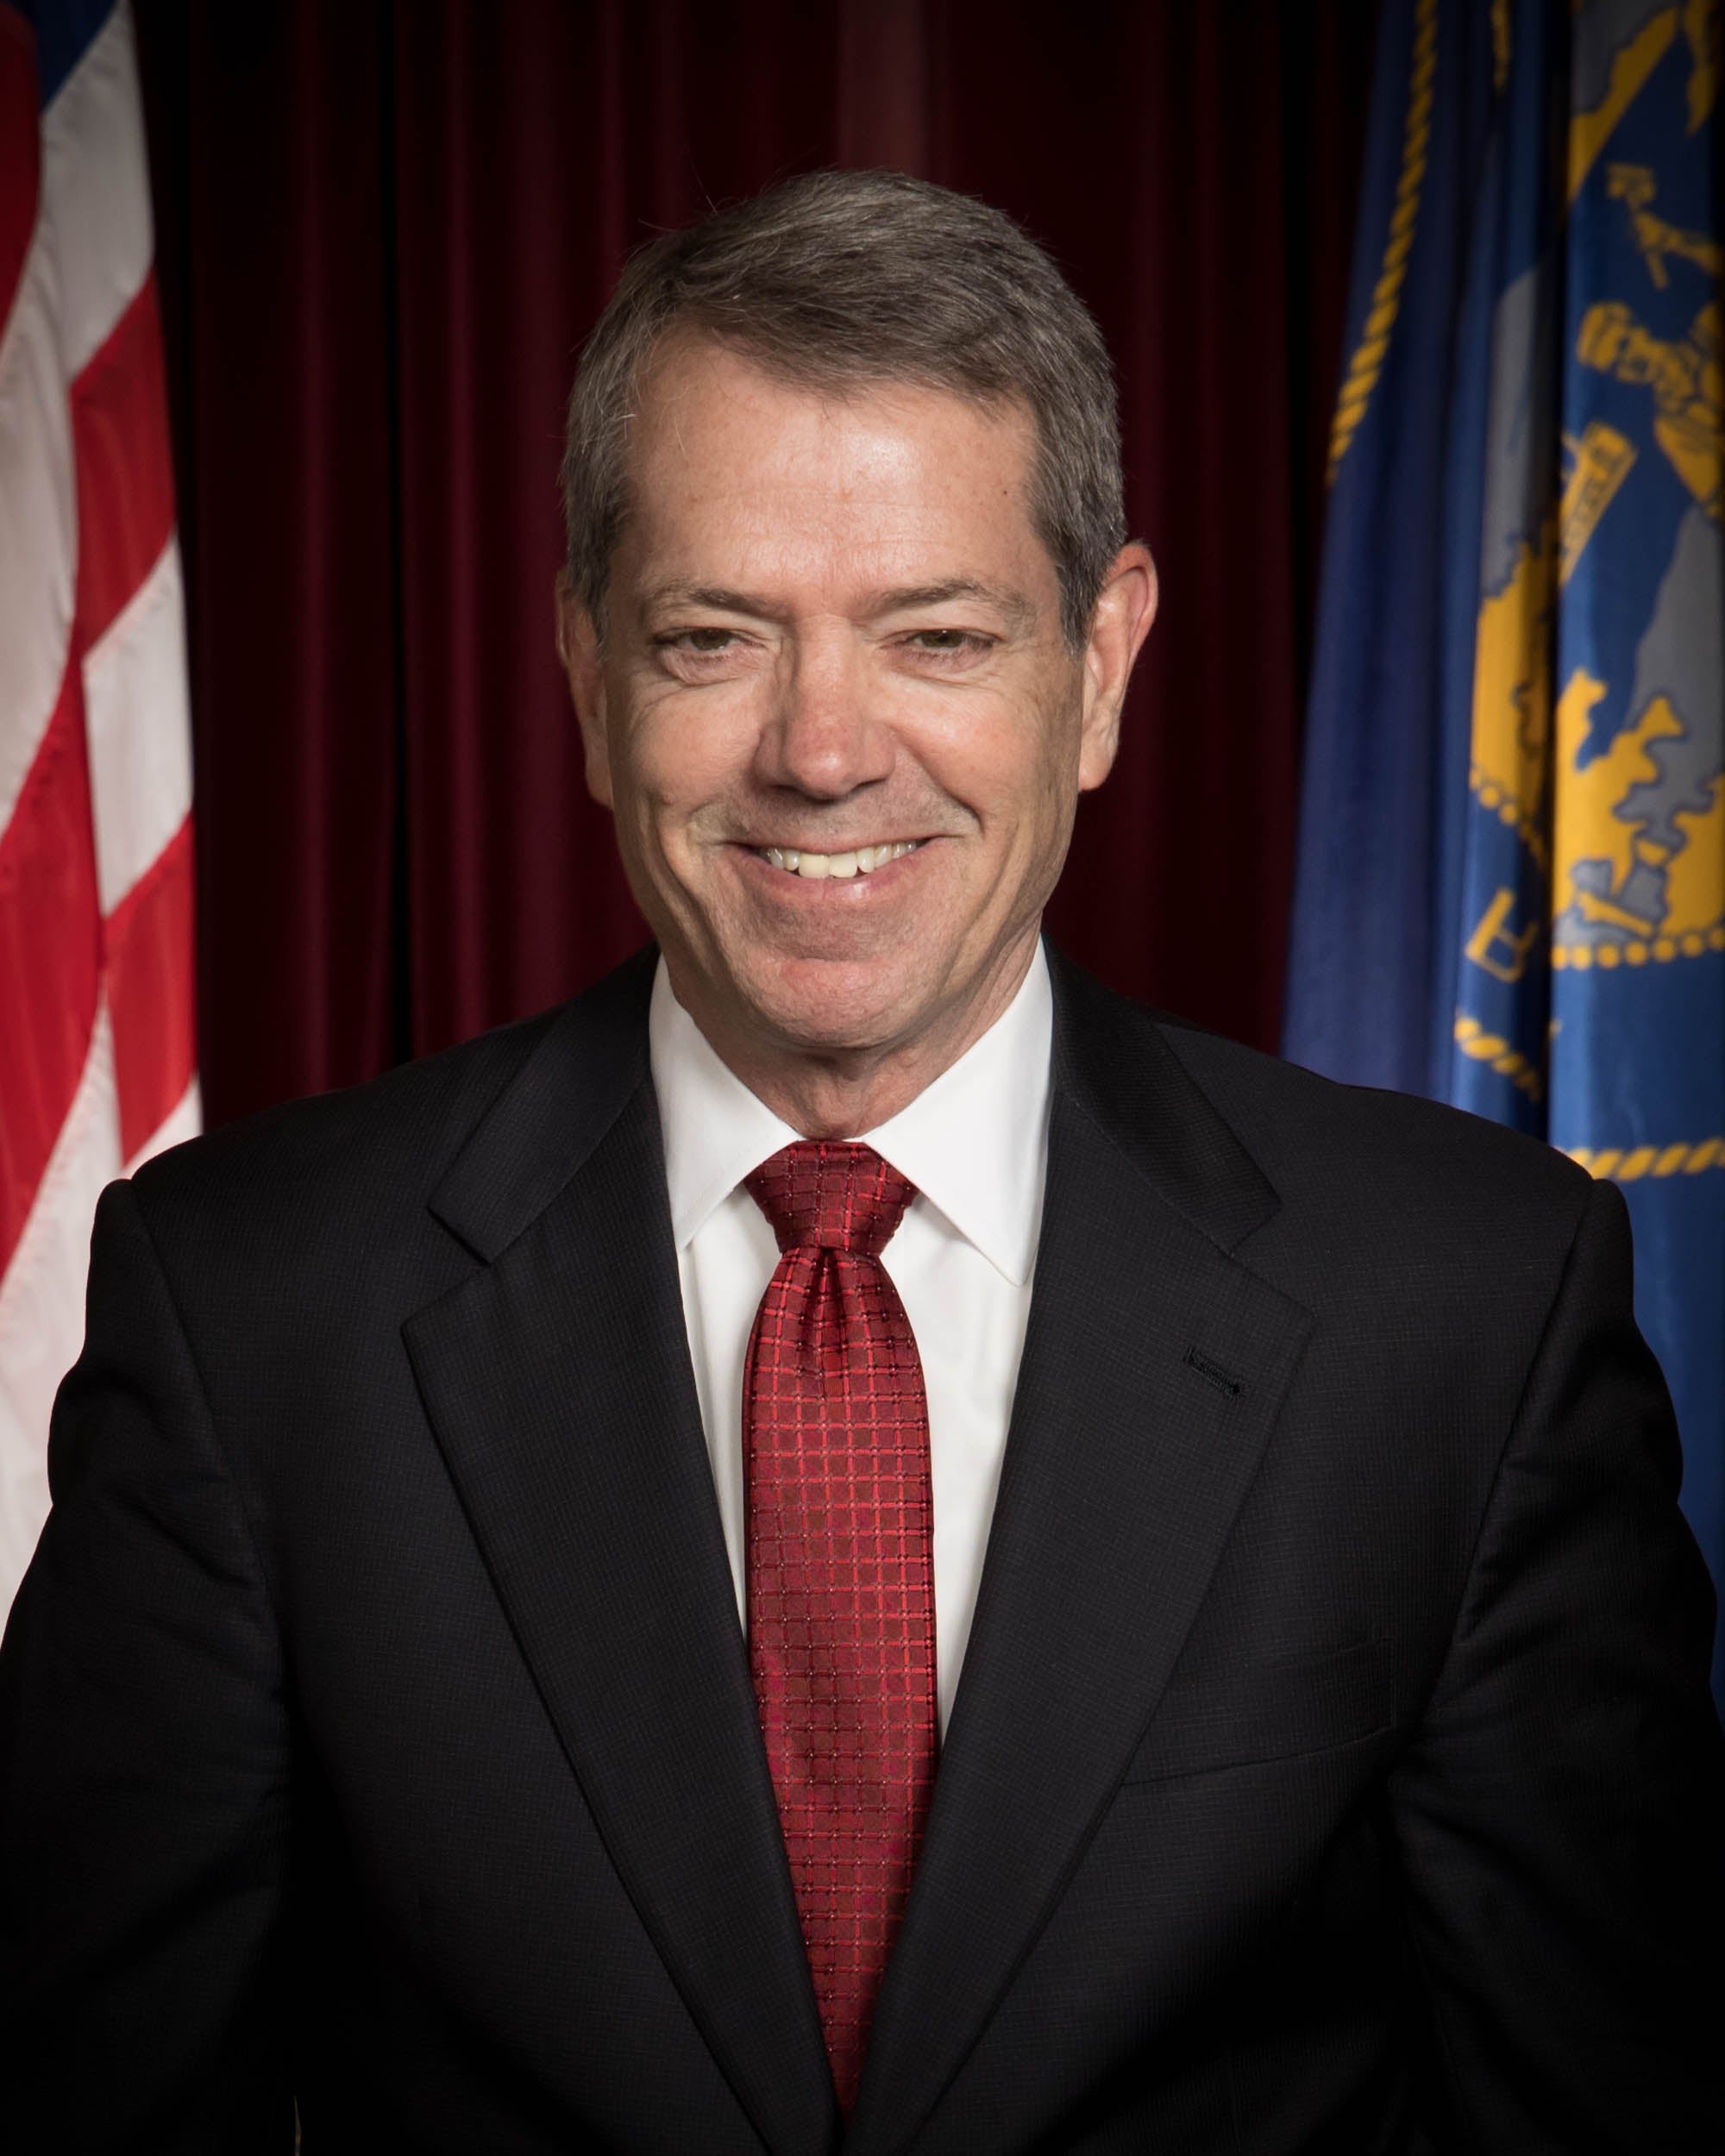 Governor Jim Pillen